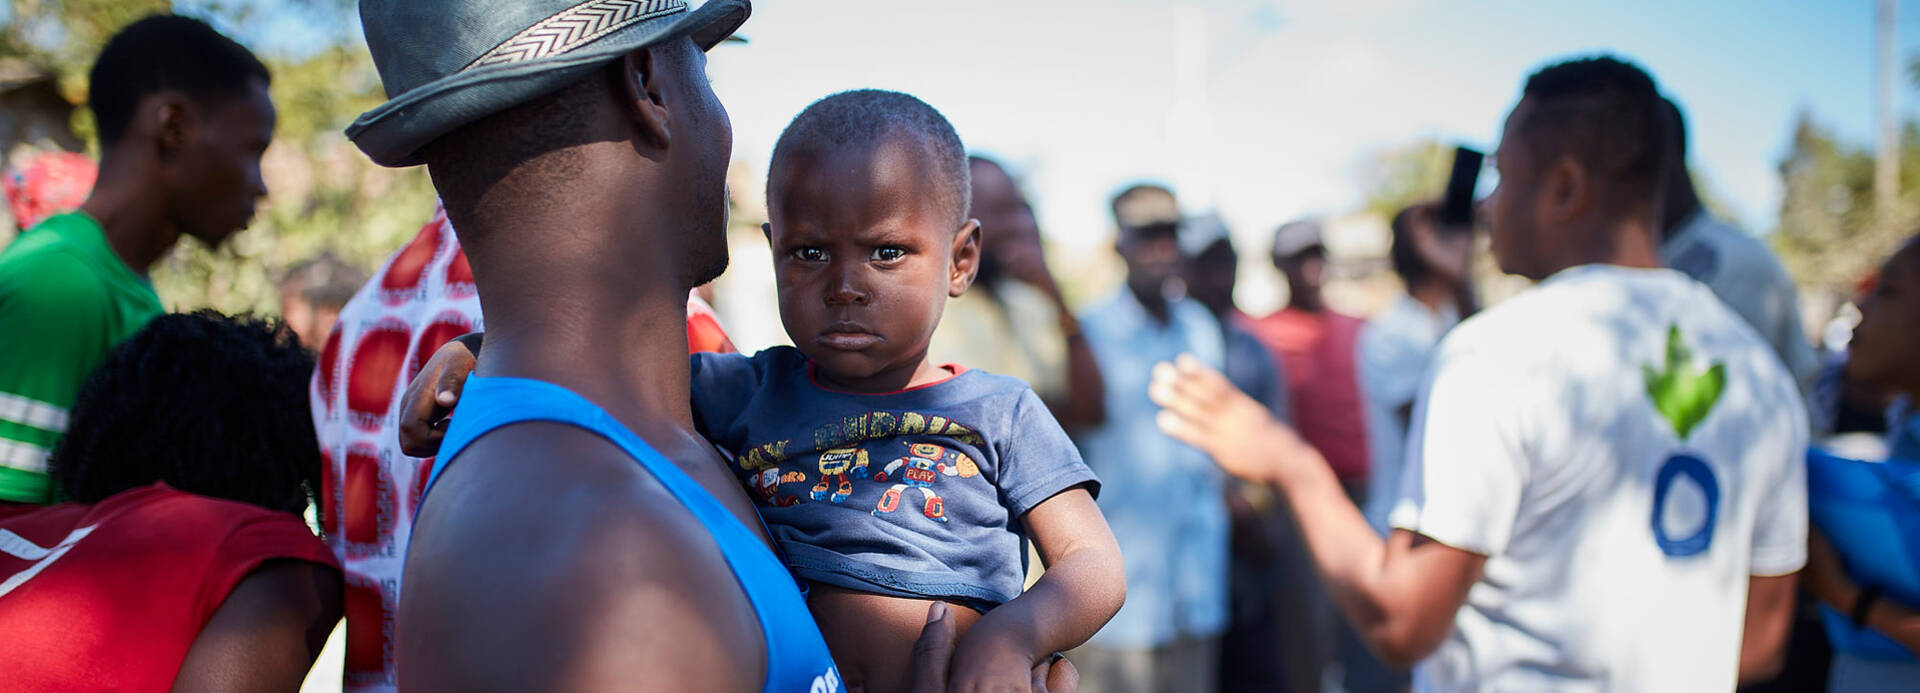 Aktion gegen den Hunger im Einsatz in Haiti